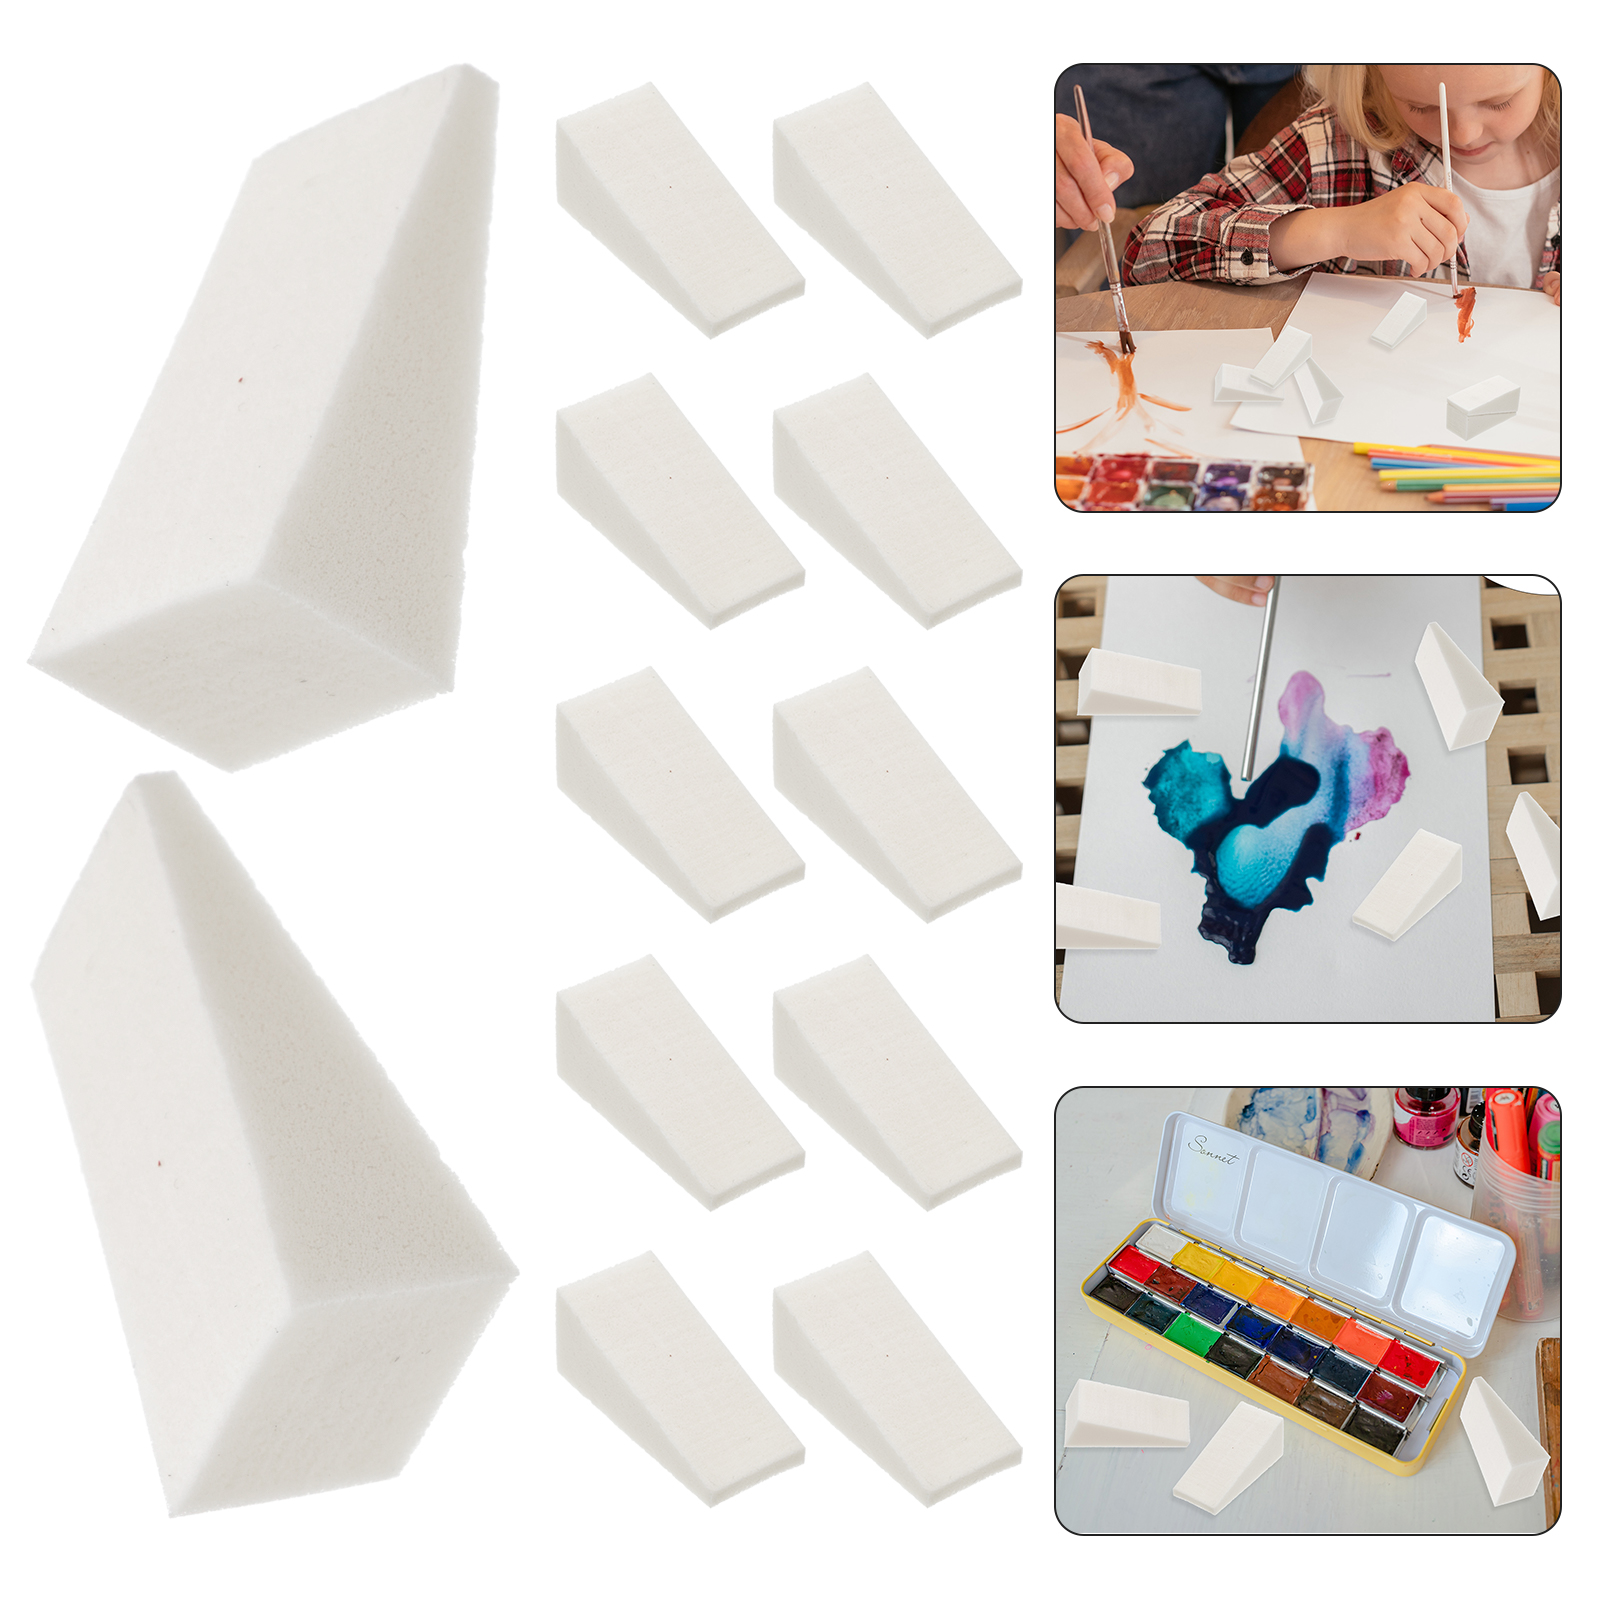 Hemoton 50pcs Children Painting Sponges Multi-Use Painting Tools Pottery Sponges, Size: 5X2X2CM